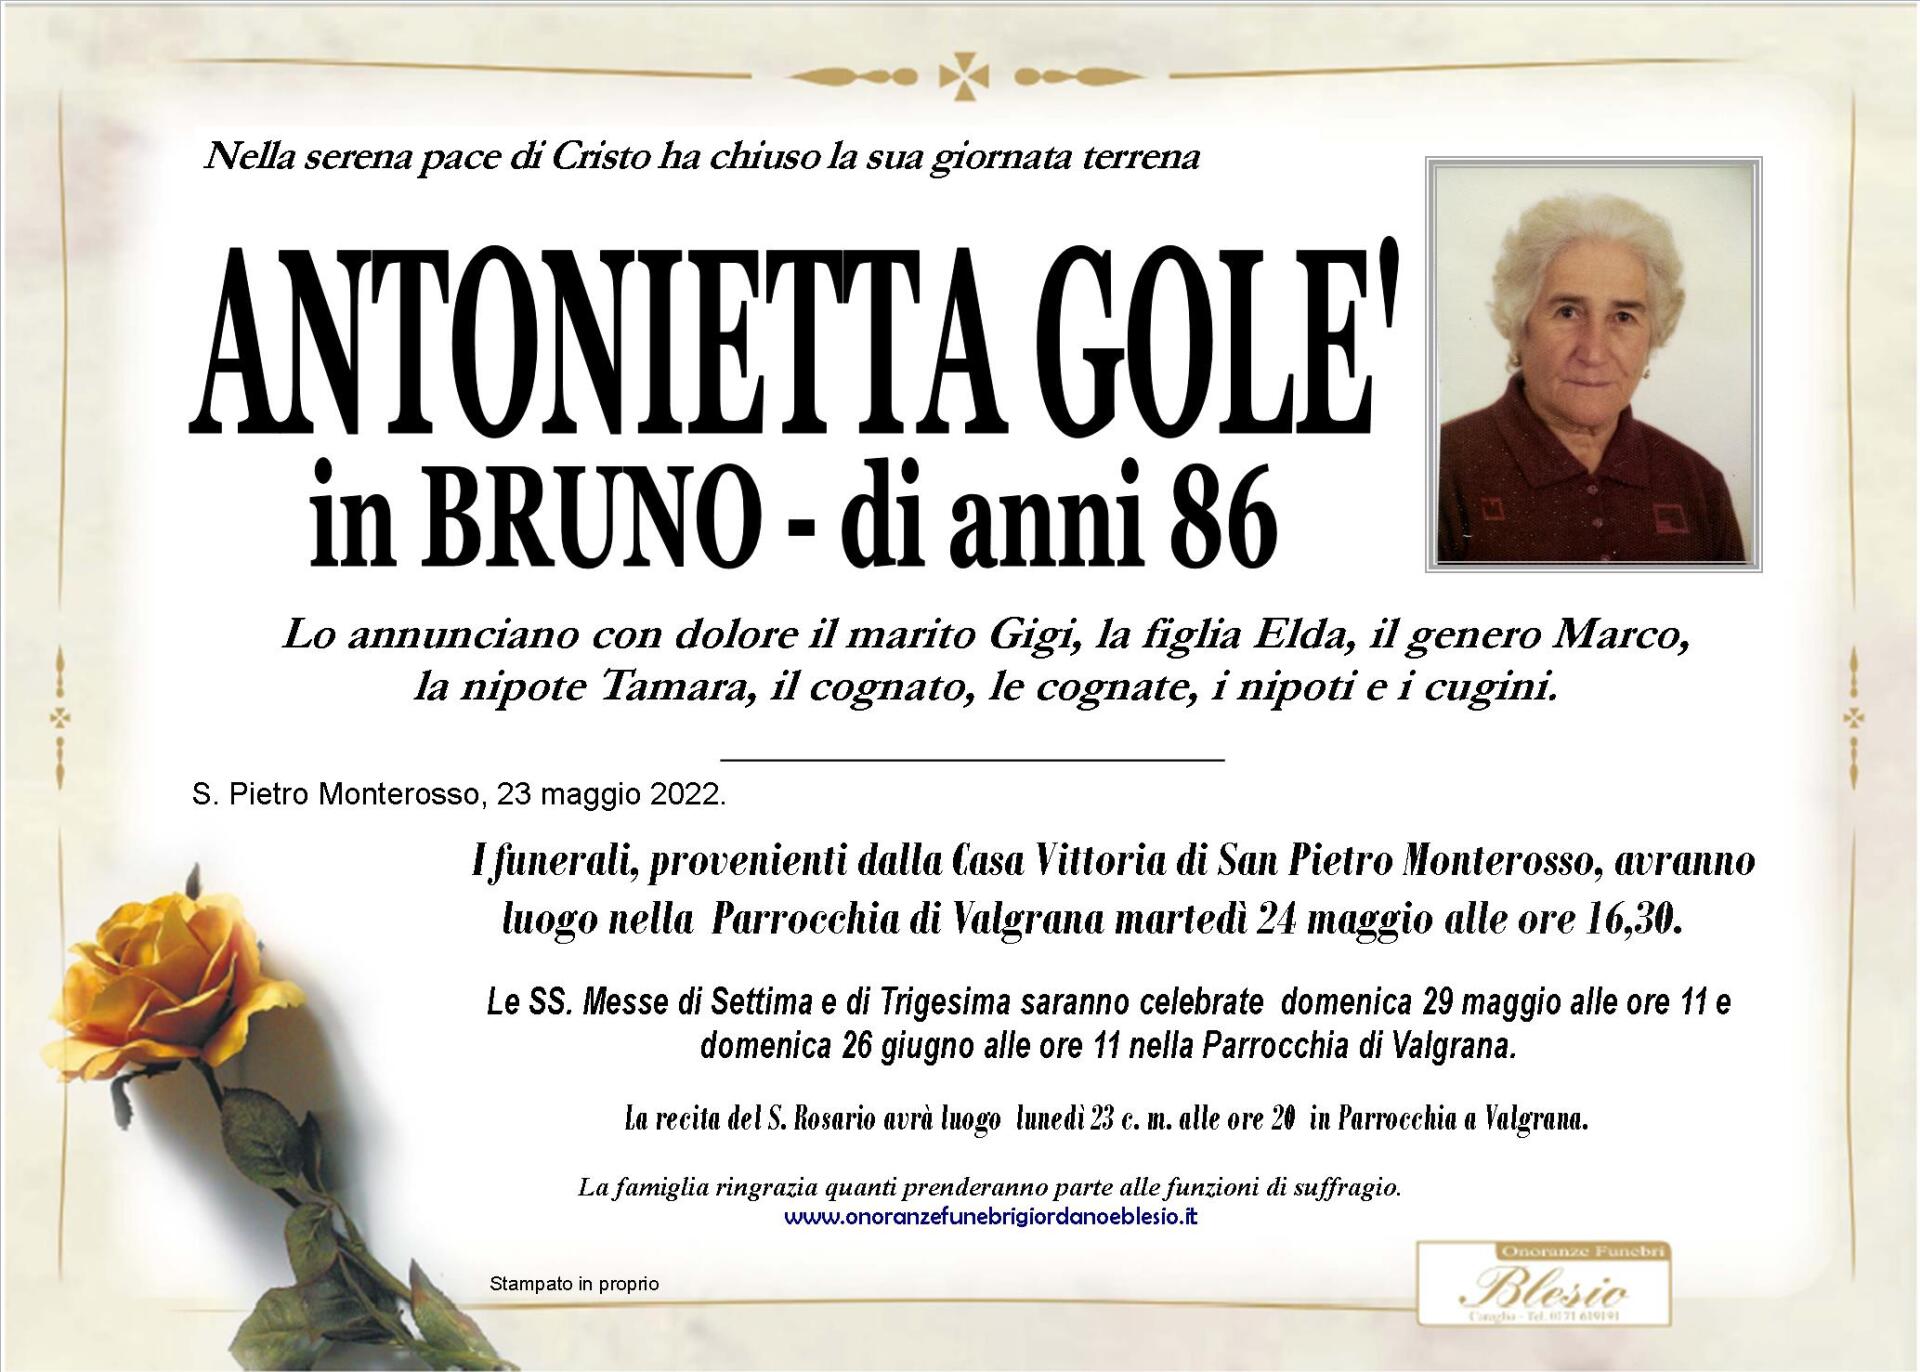 necrologio GOLE' Antonietta in Bruno